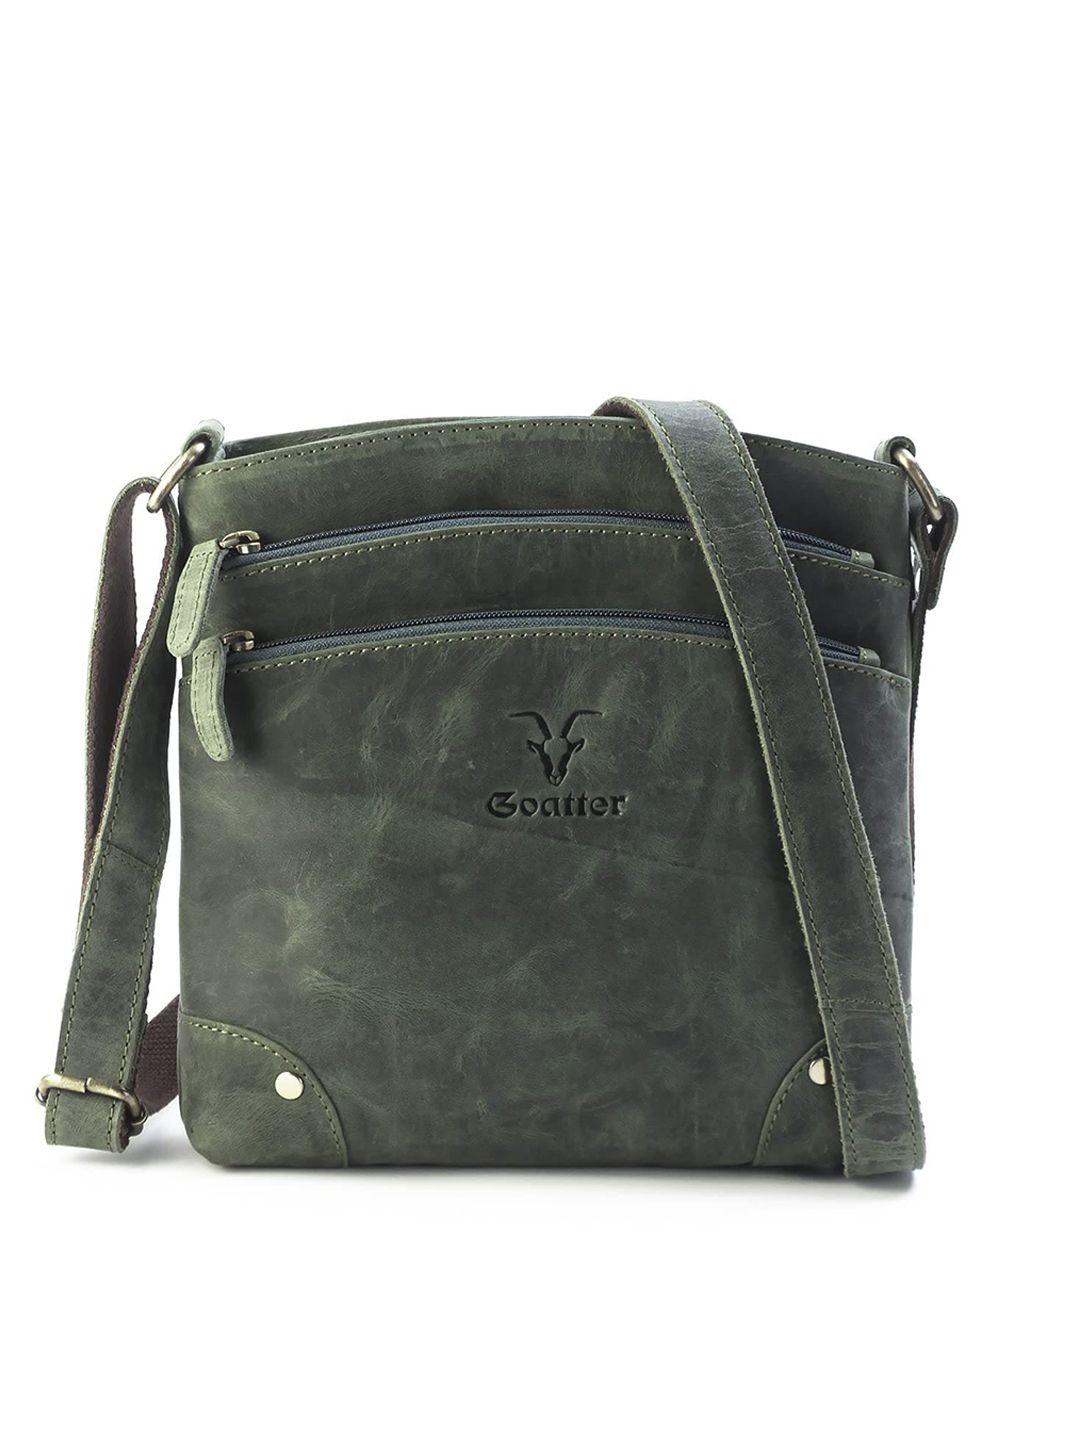 goatter textured leather structured sling bag